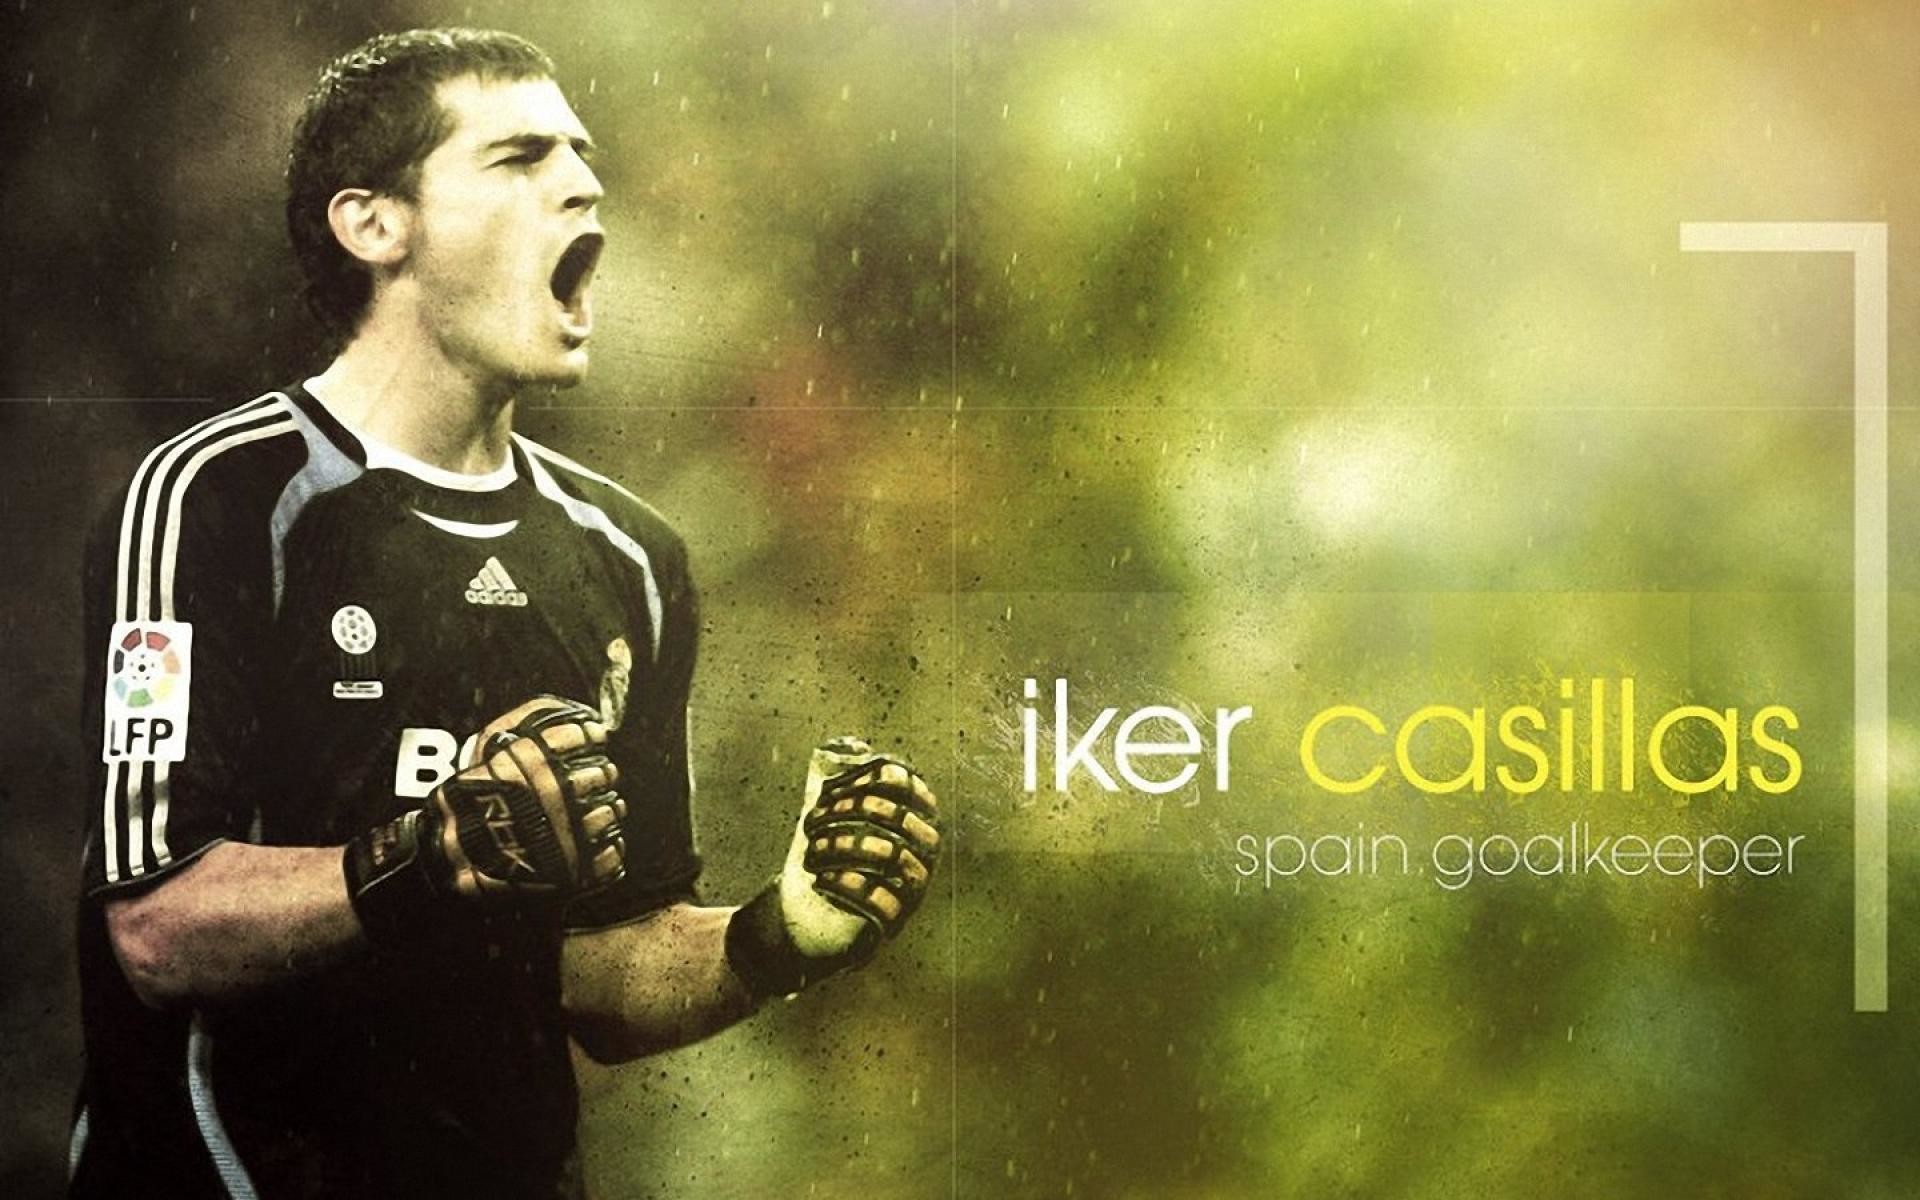 1920x1200 Iker Casillas wallpapers hd | Iker Casillas HD Images | Pinterest | Iker  casillas